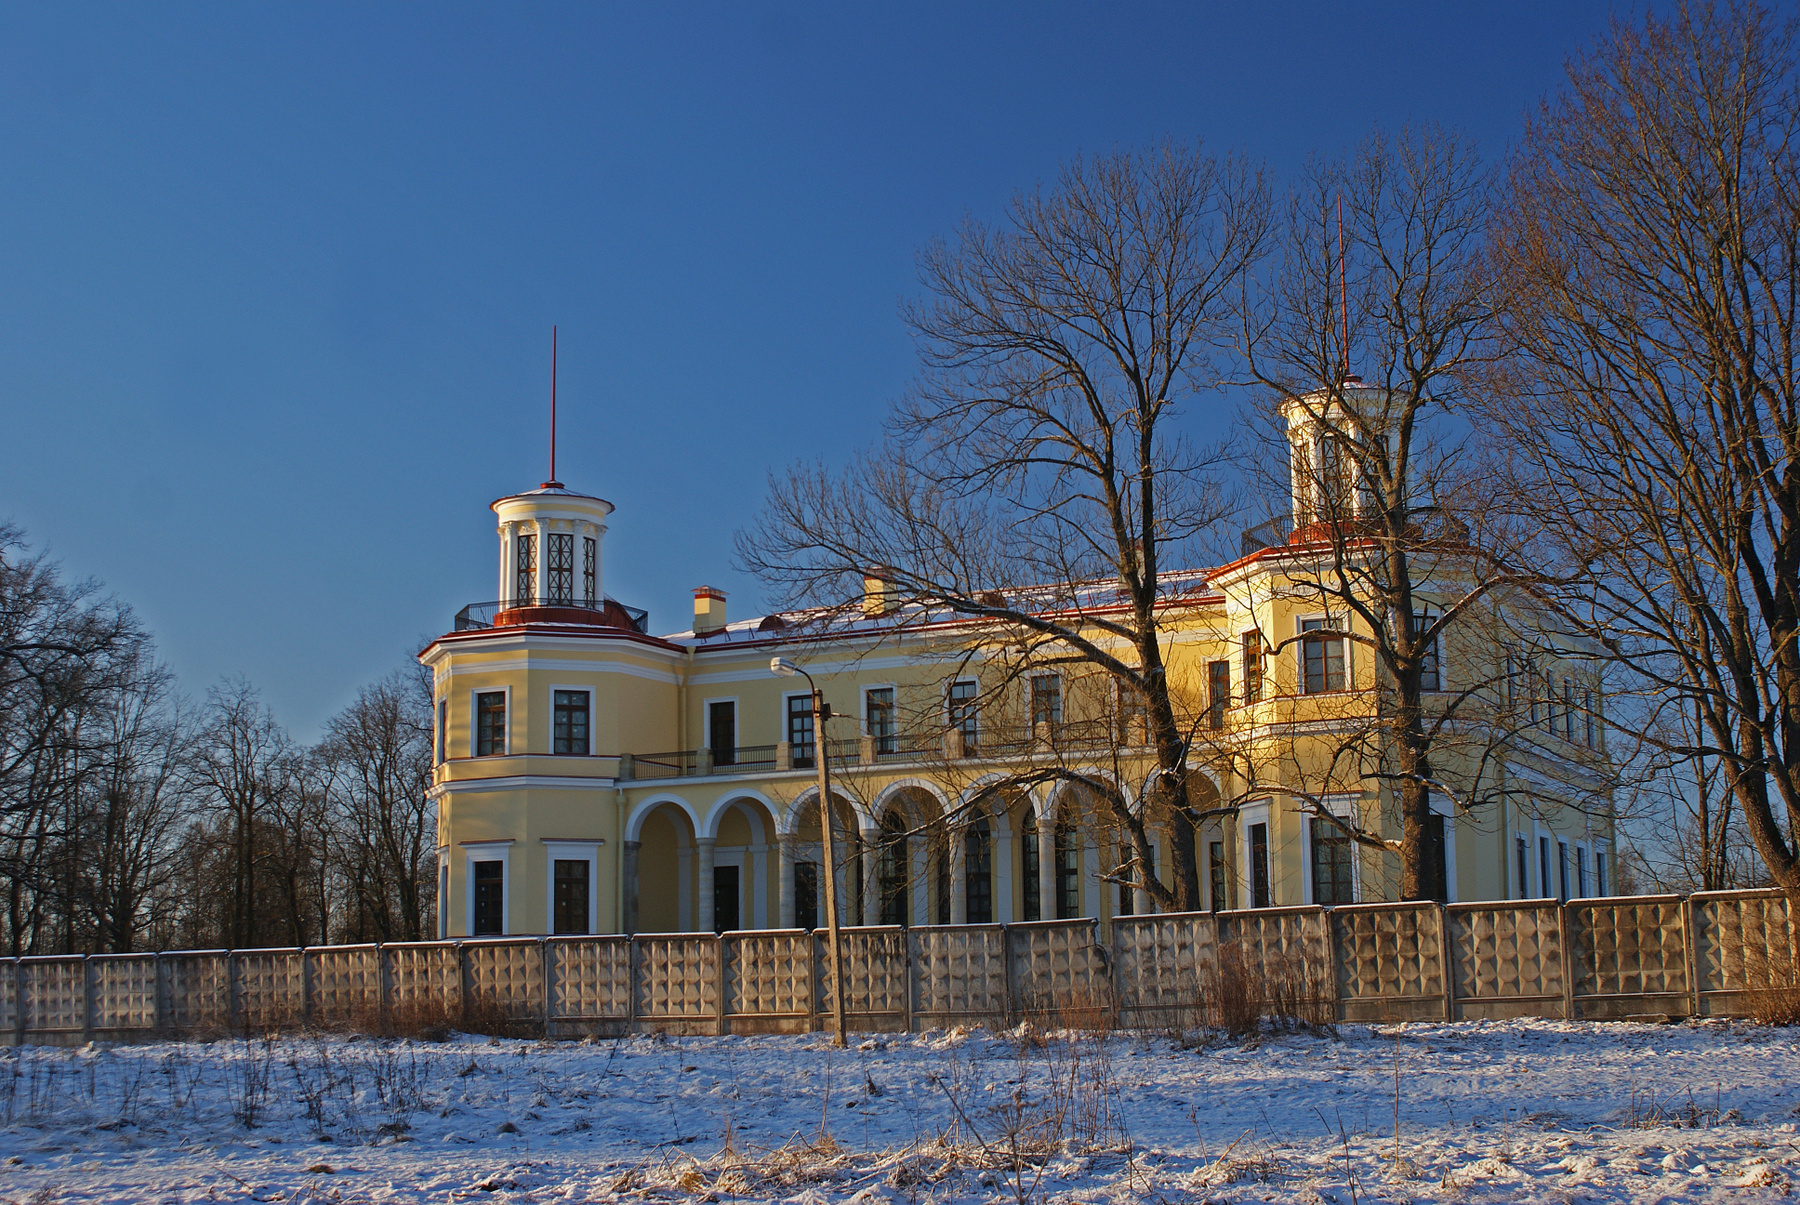 Дворец графини Самойловой 6 января 2017 графская славянка дворец динамо зима самойлова